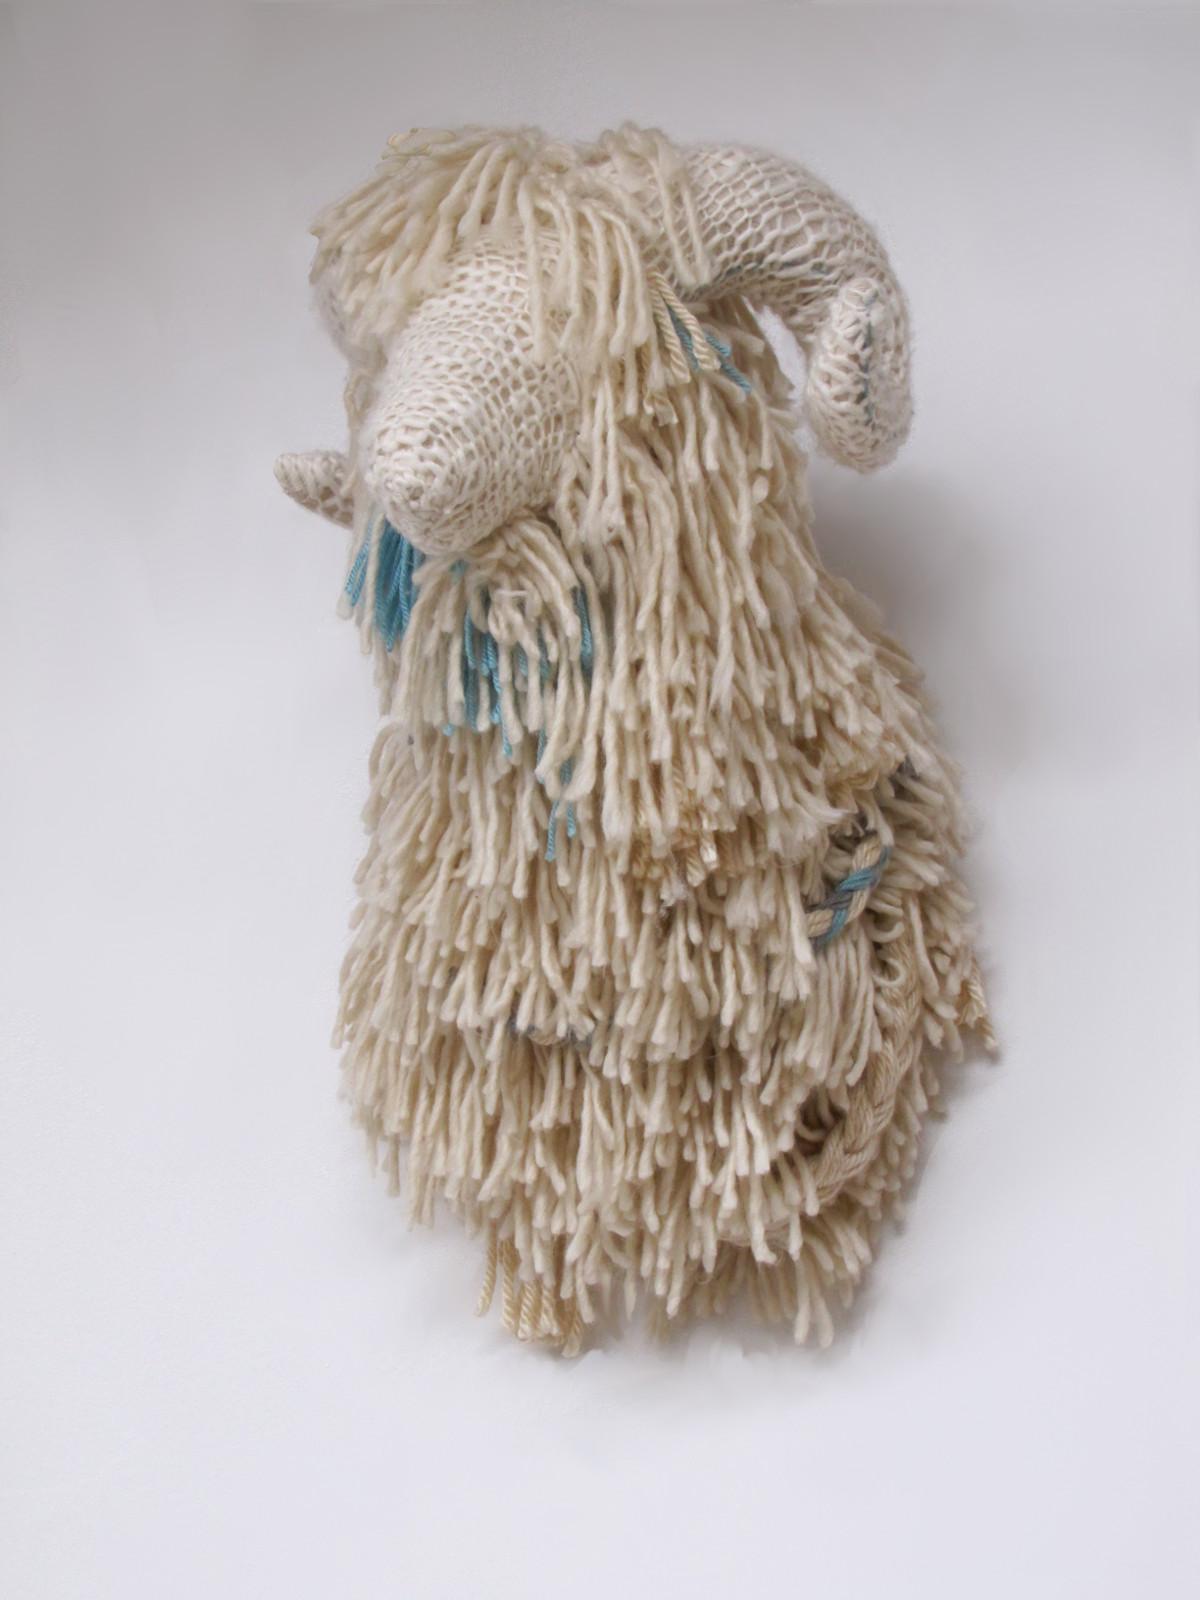 Winter Wool - Mixed Media Art by Rachel Denny